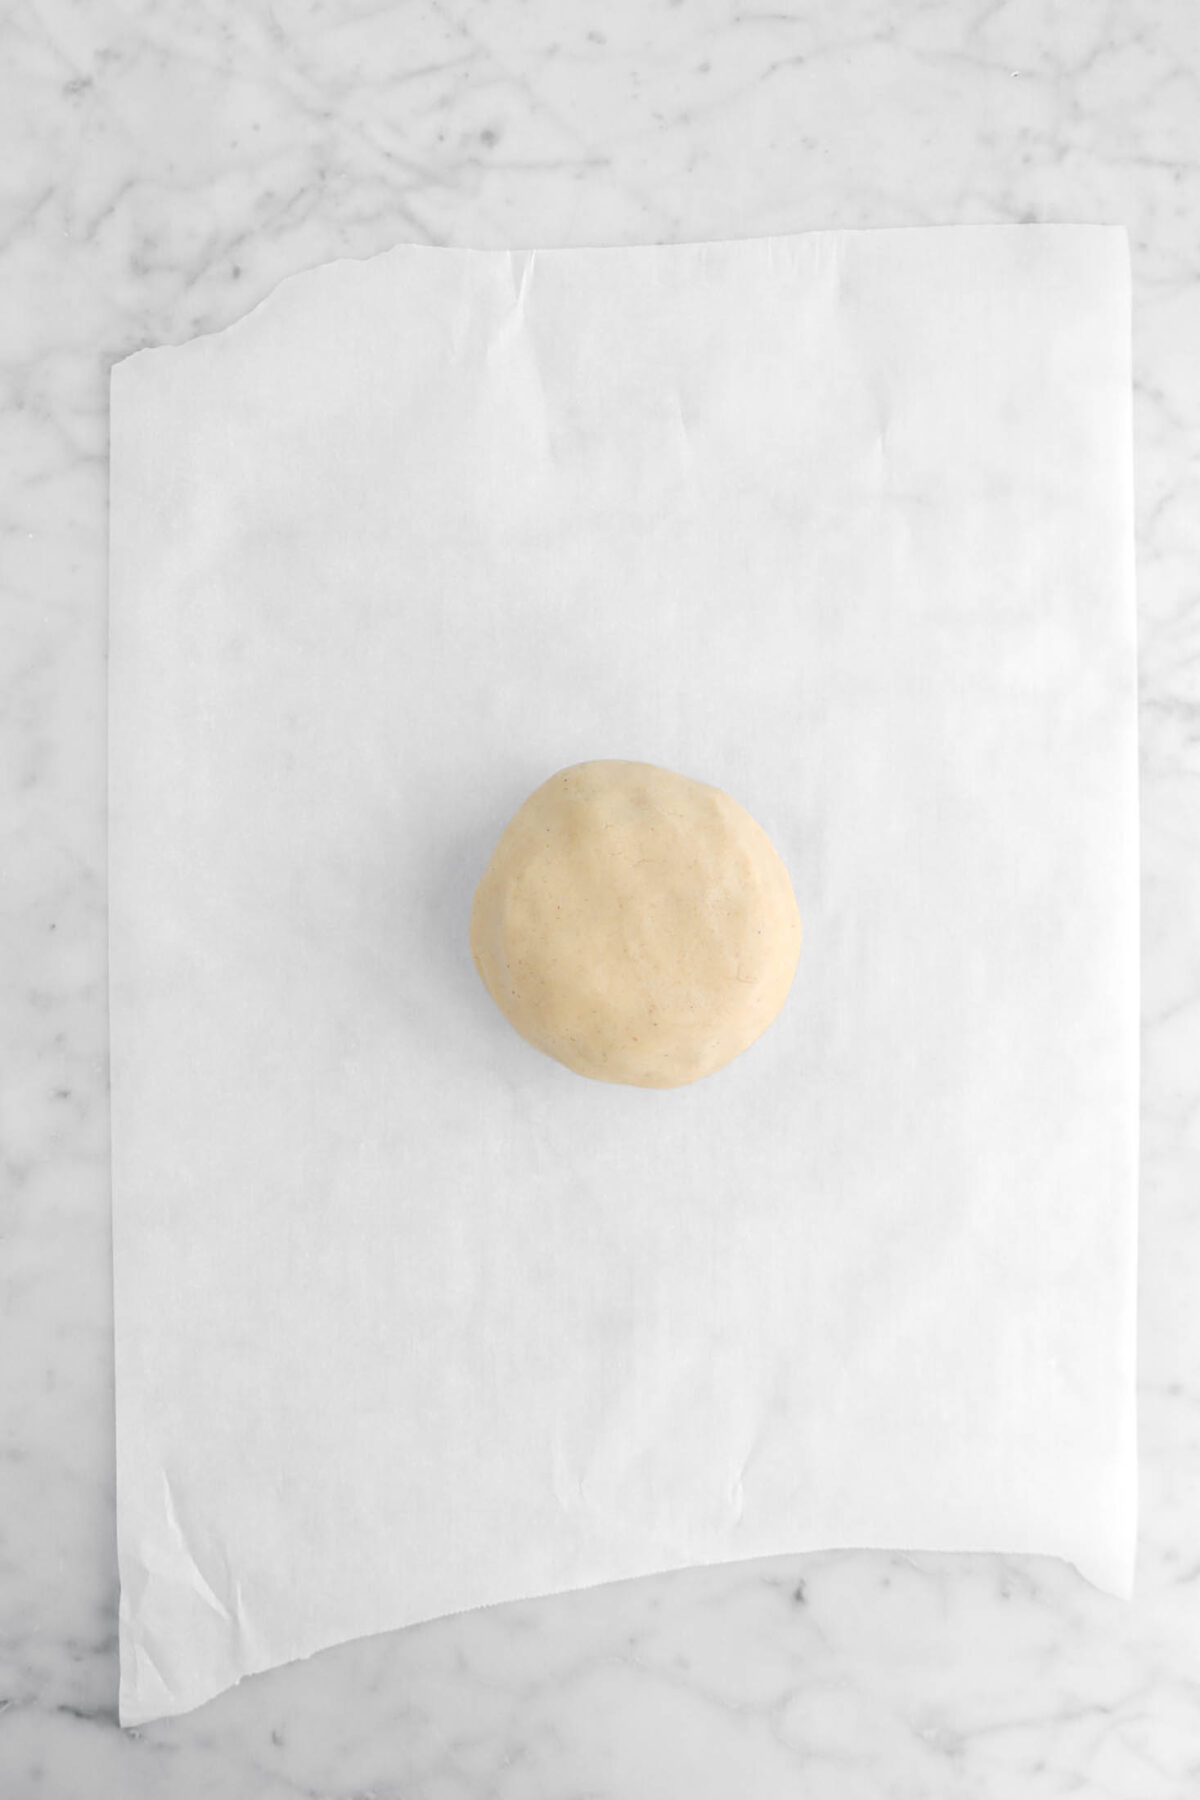 dough ball on parchment paper.